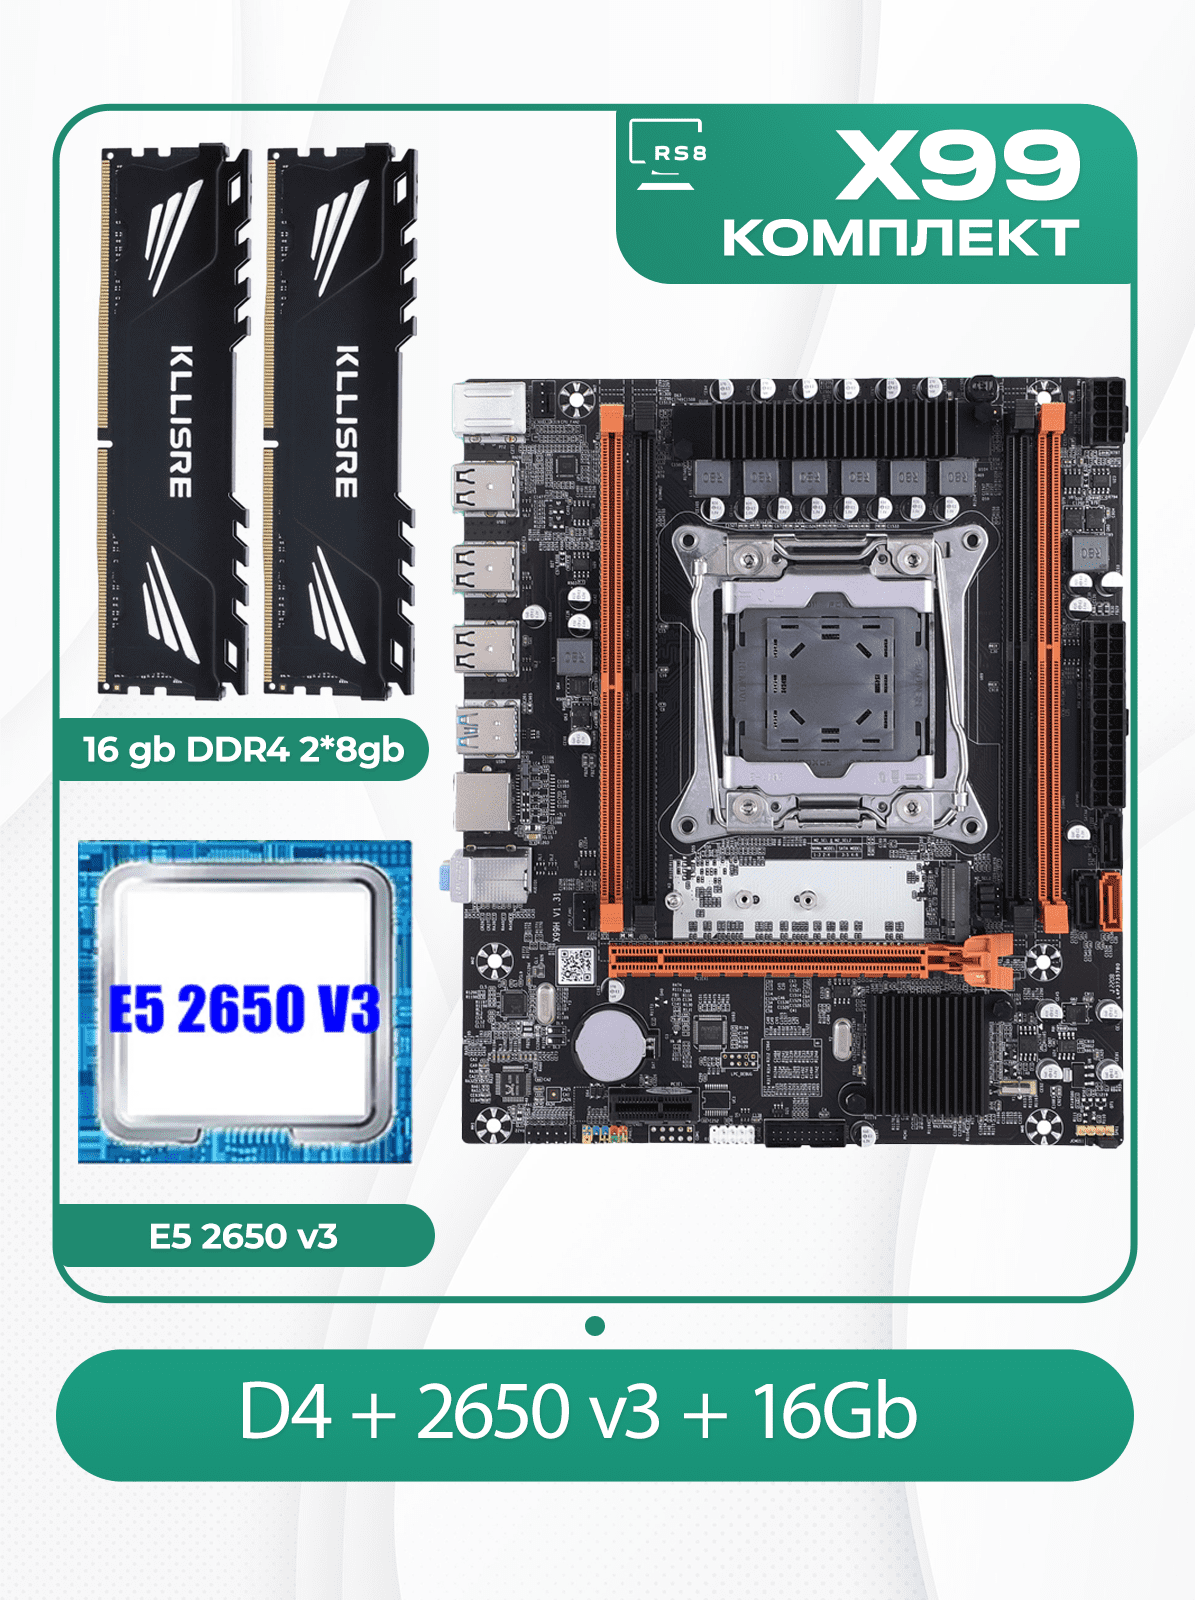 Комплект материнской платы X99: Atermiter D4 2011v3 + Xeon E5 2650v3 + DDR4 16Гб 2666Мгц Kllisre